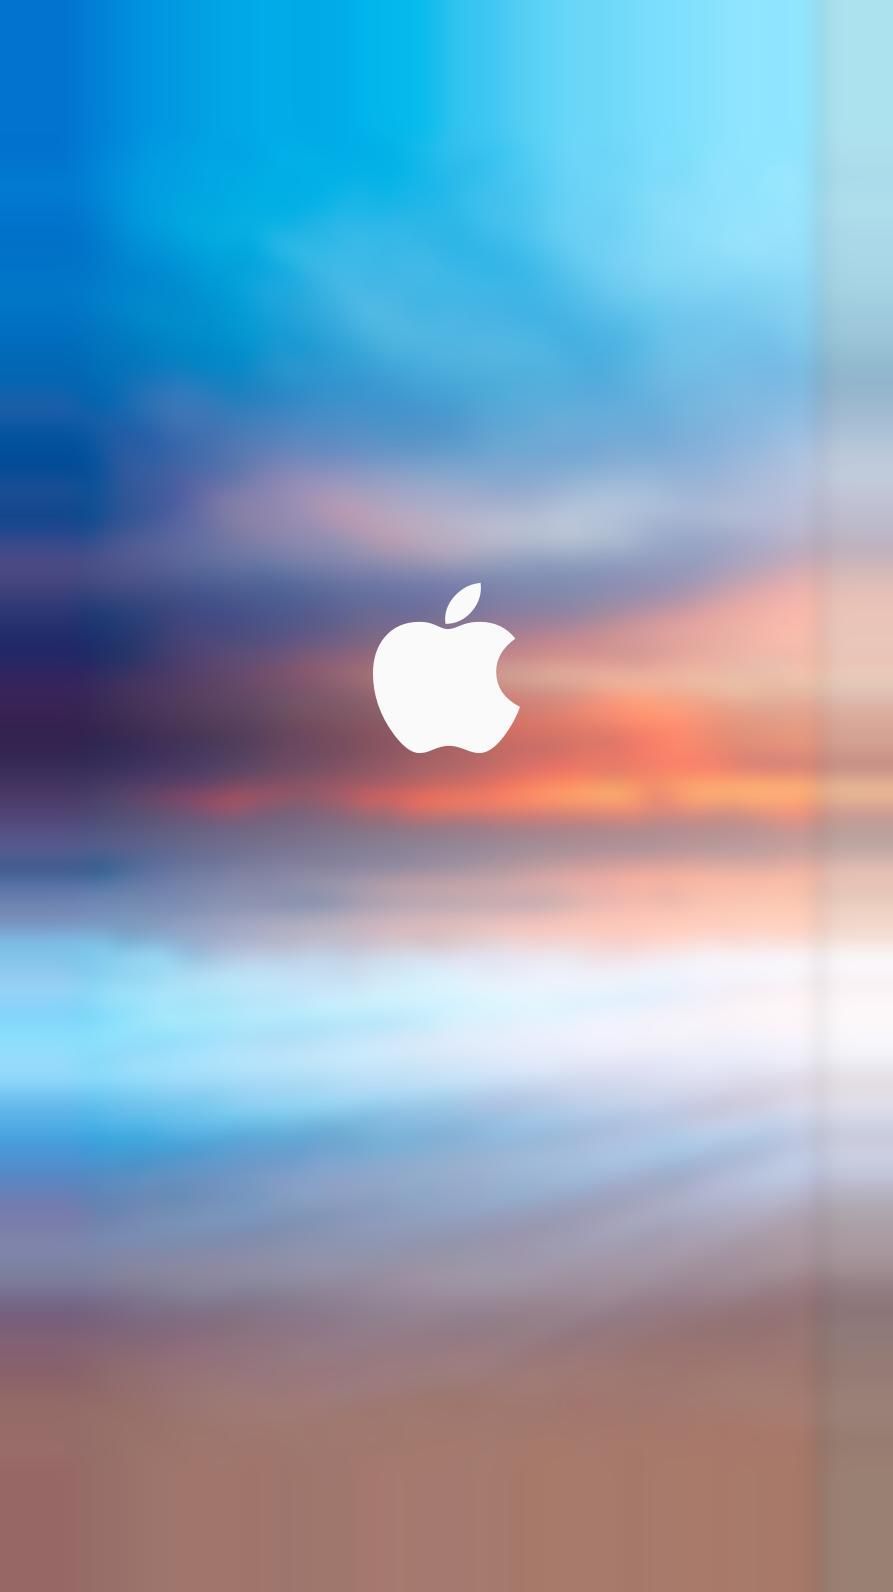 Hình nền logo iPhone chất lượng cao: Hiển thị sự thương hiệu của mình với hình nền độc đáo chỉ cho iPhone. Với chất lượng cao và màu sắc sáng tạo của nó, hình nền này sẽ giúp chiếc điện thoại của bạn trở nên đẳng cấp hơn.